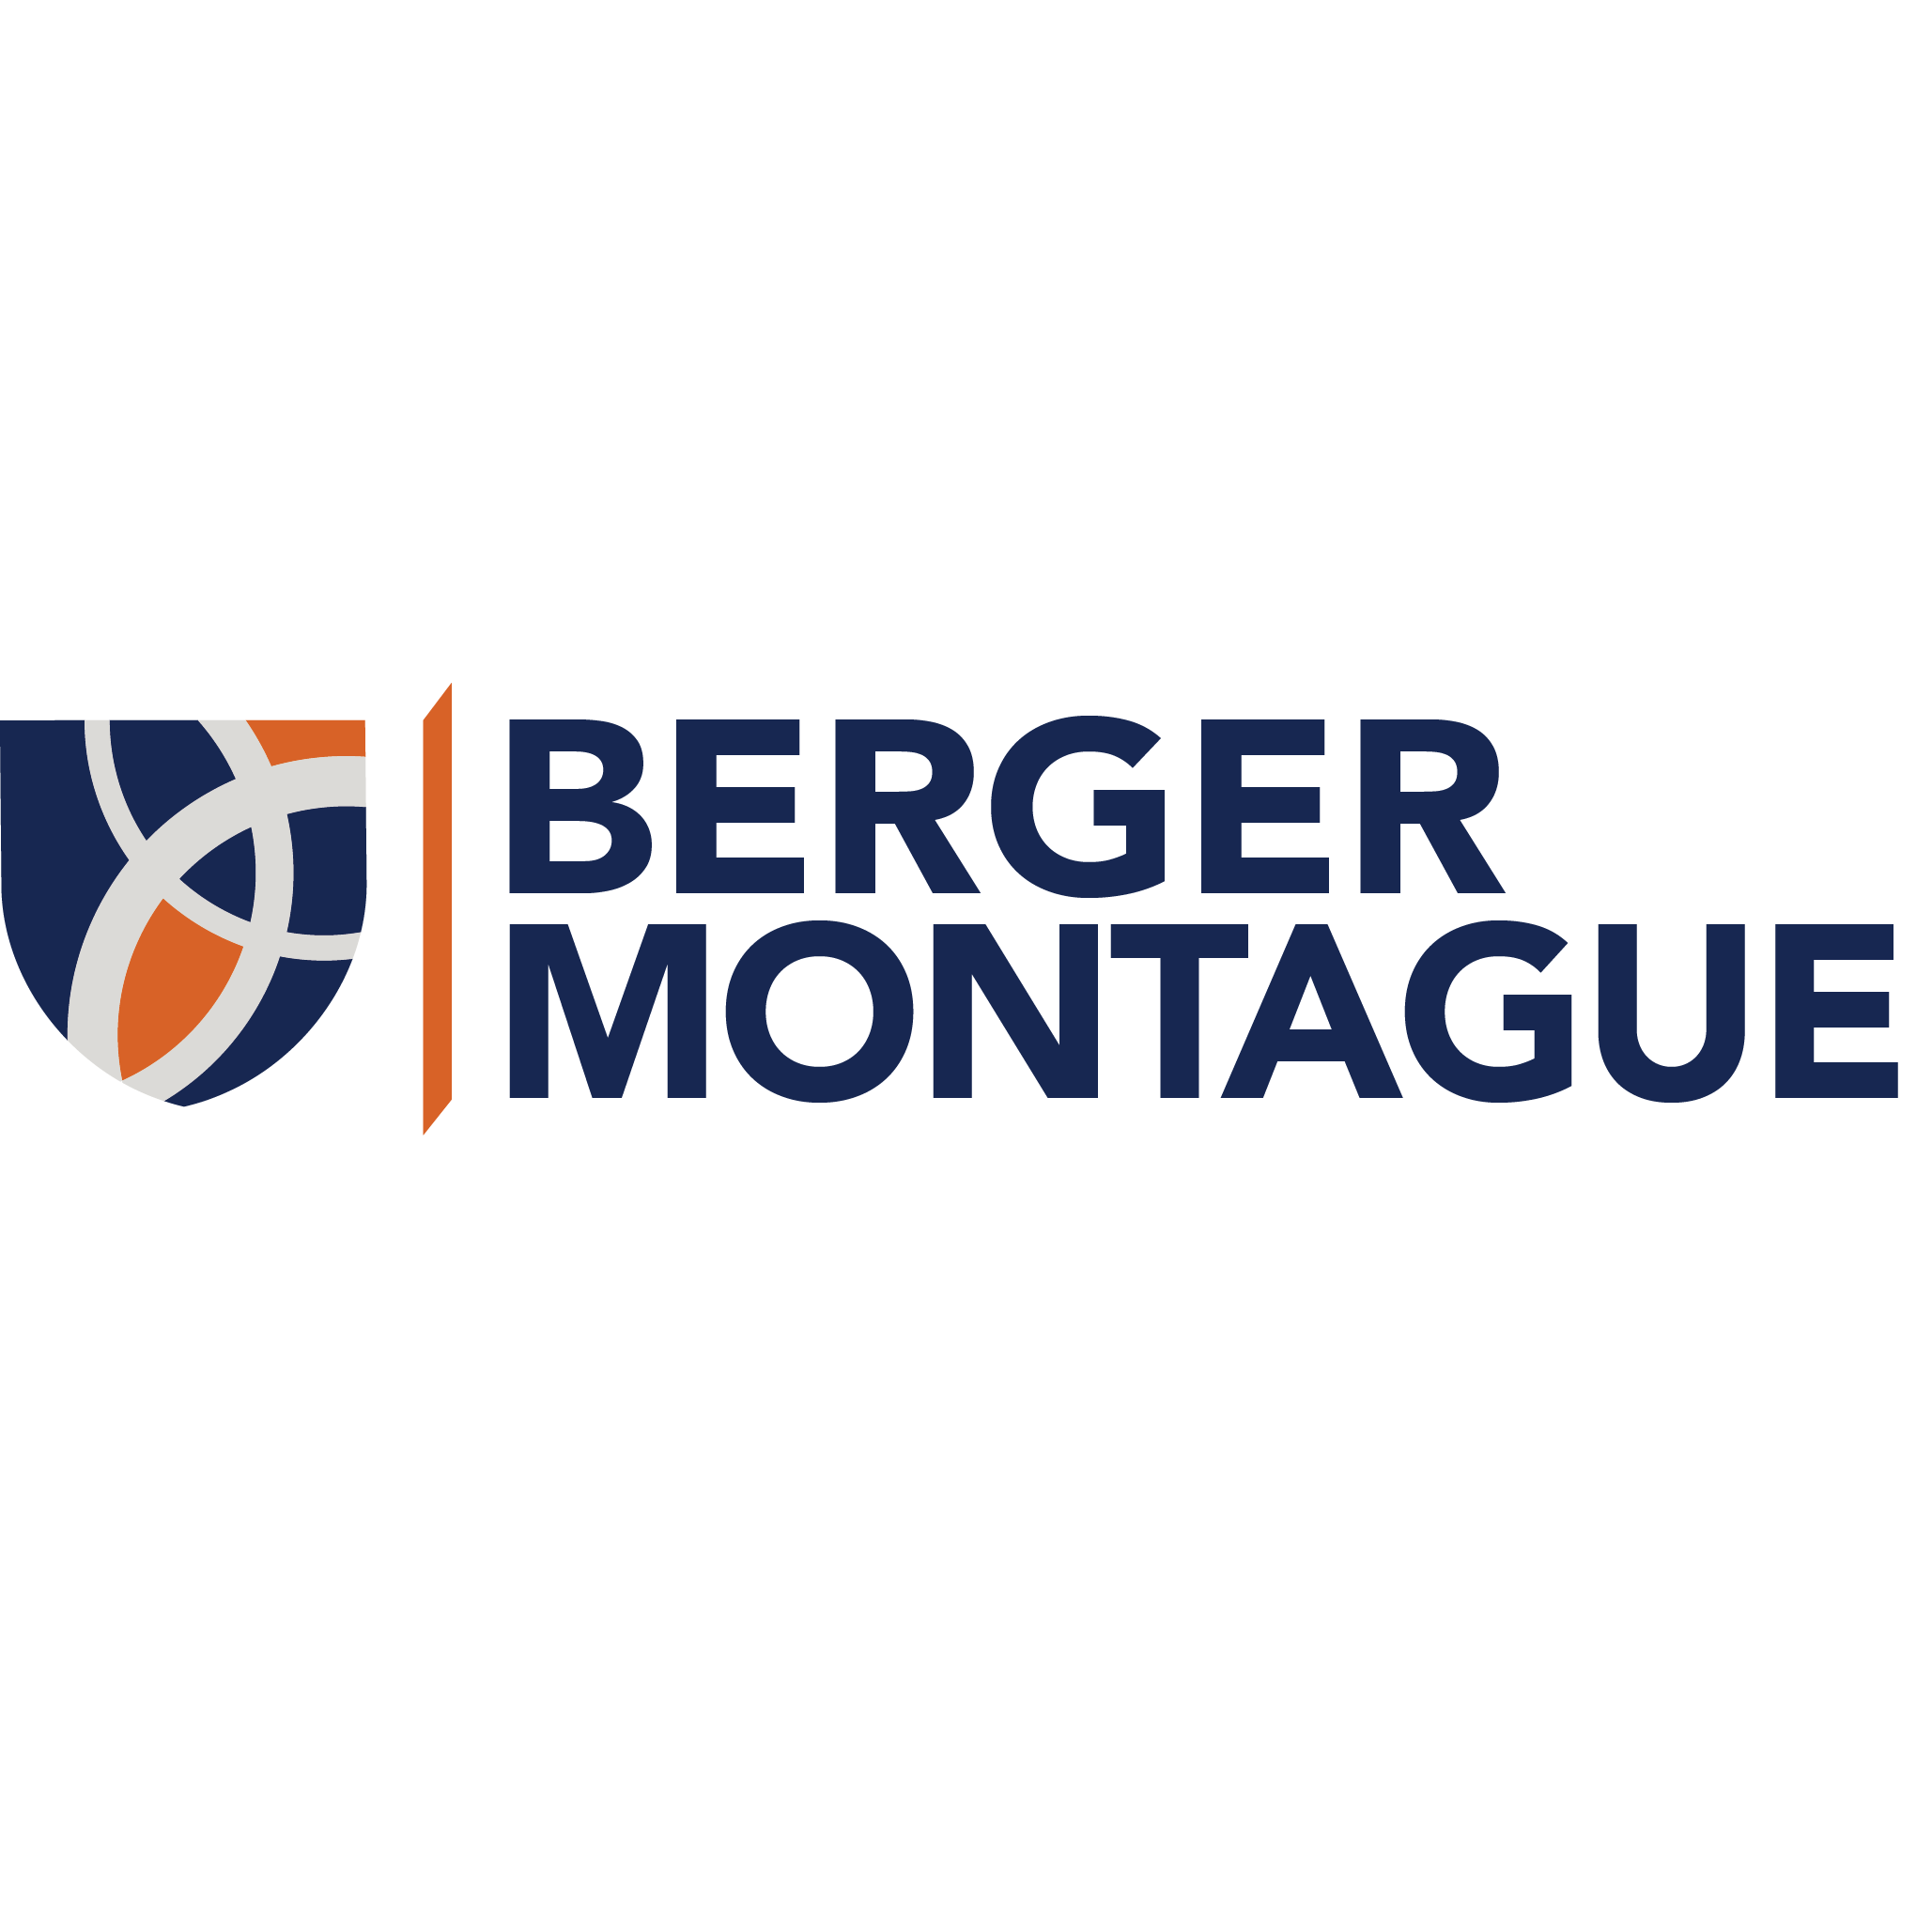 Berger Montague - Philadelphia, PA 19103 - (215)875-3000 | ShowMeLocal.com